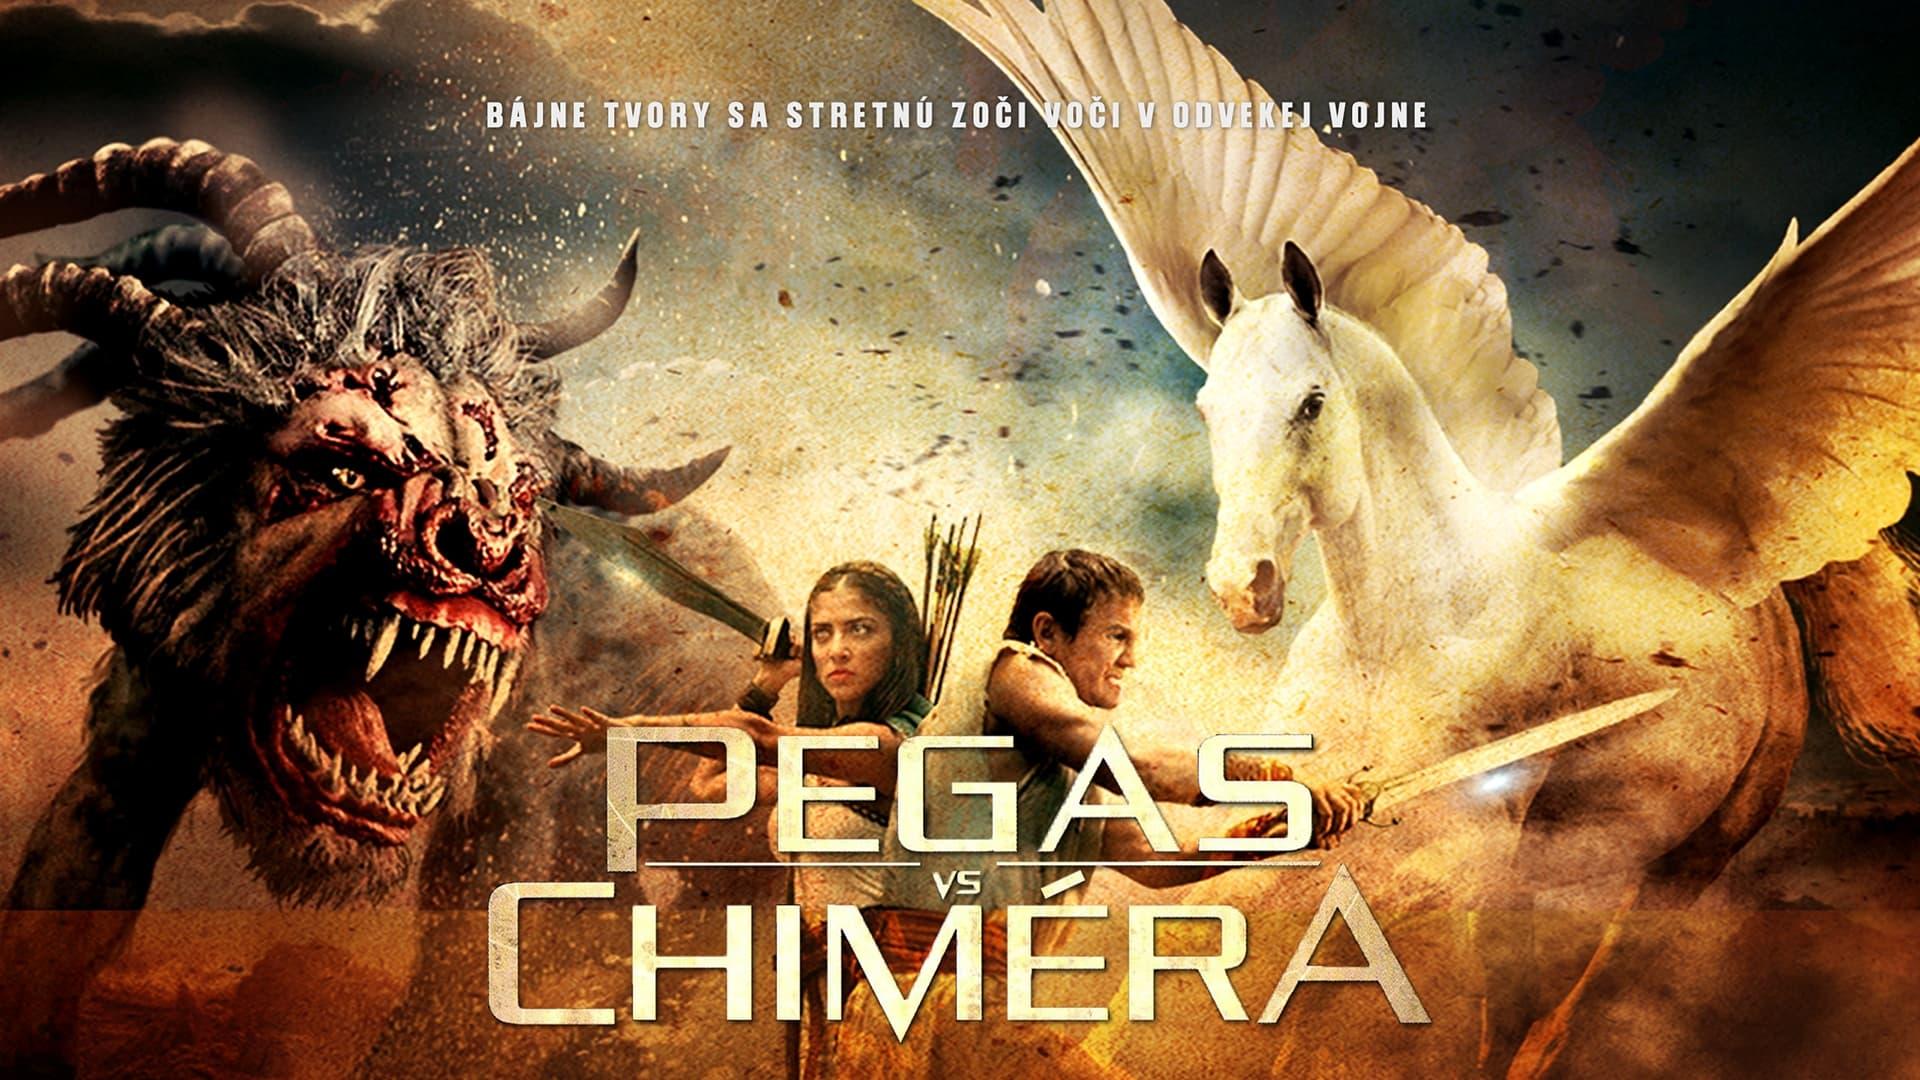 Pegasus Vs. Chimera backdrop